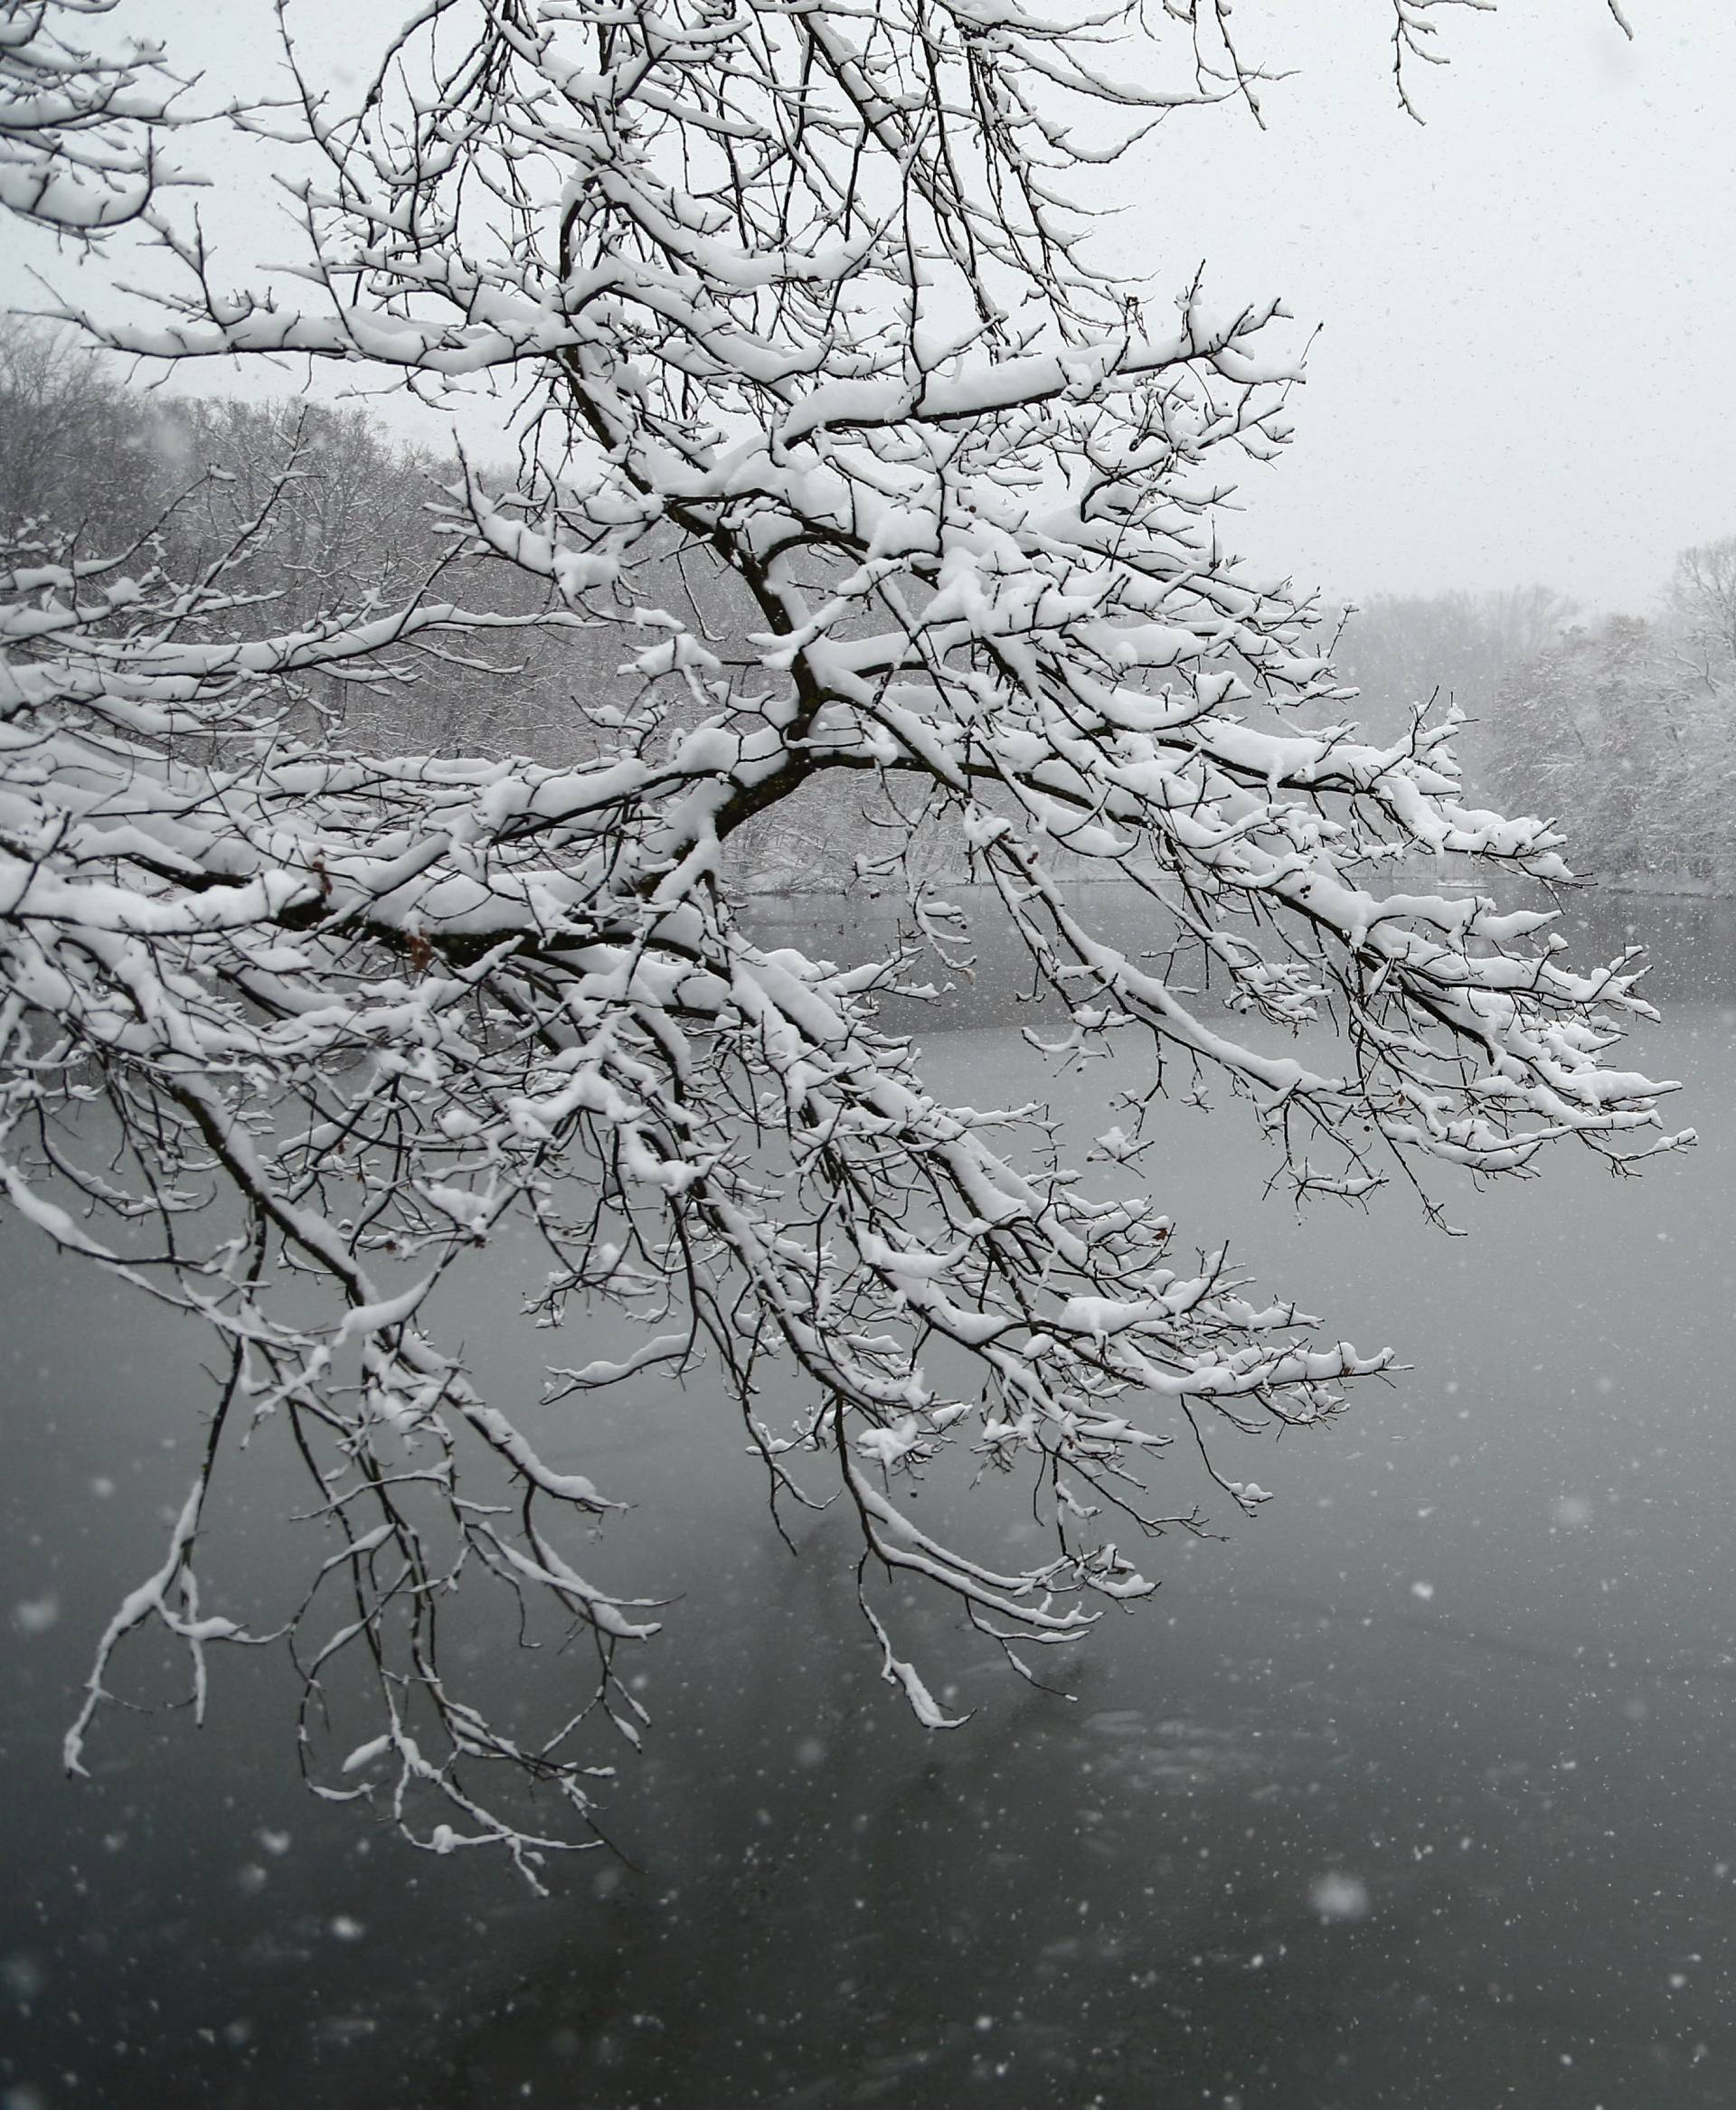 Snow falls in Zagreb's park Maksimir